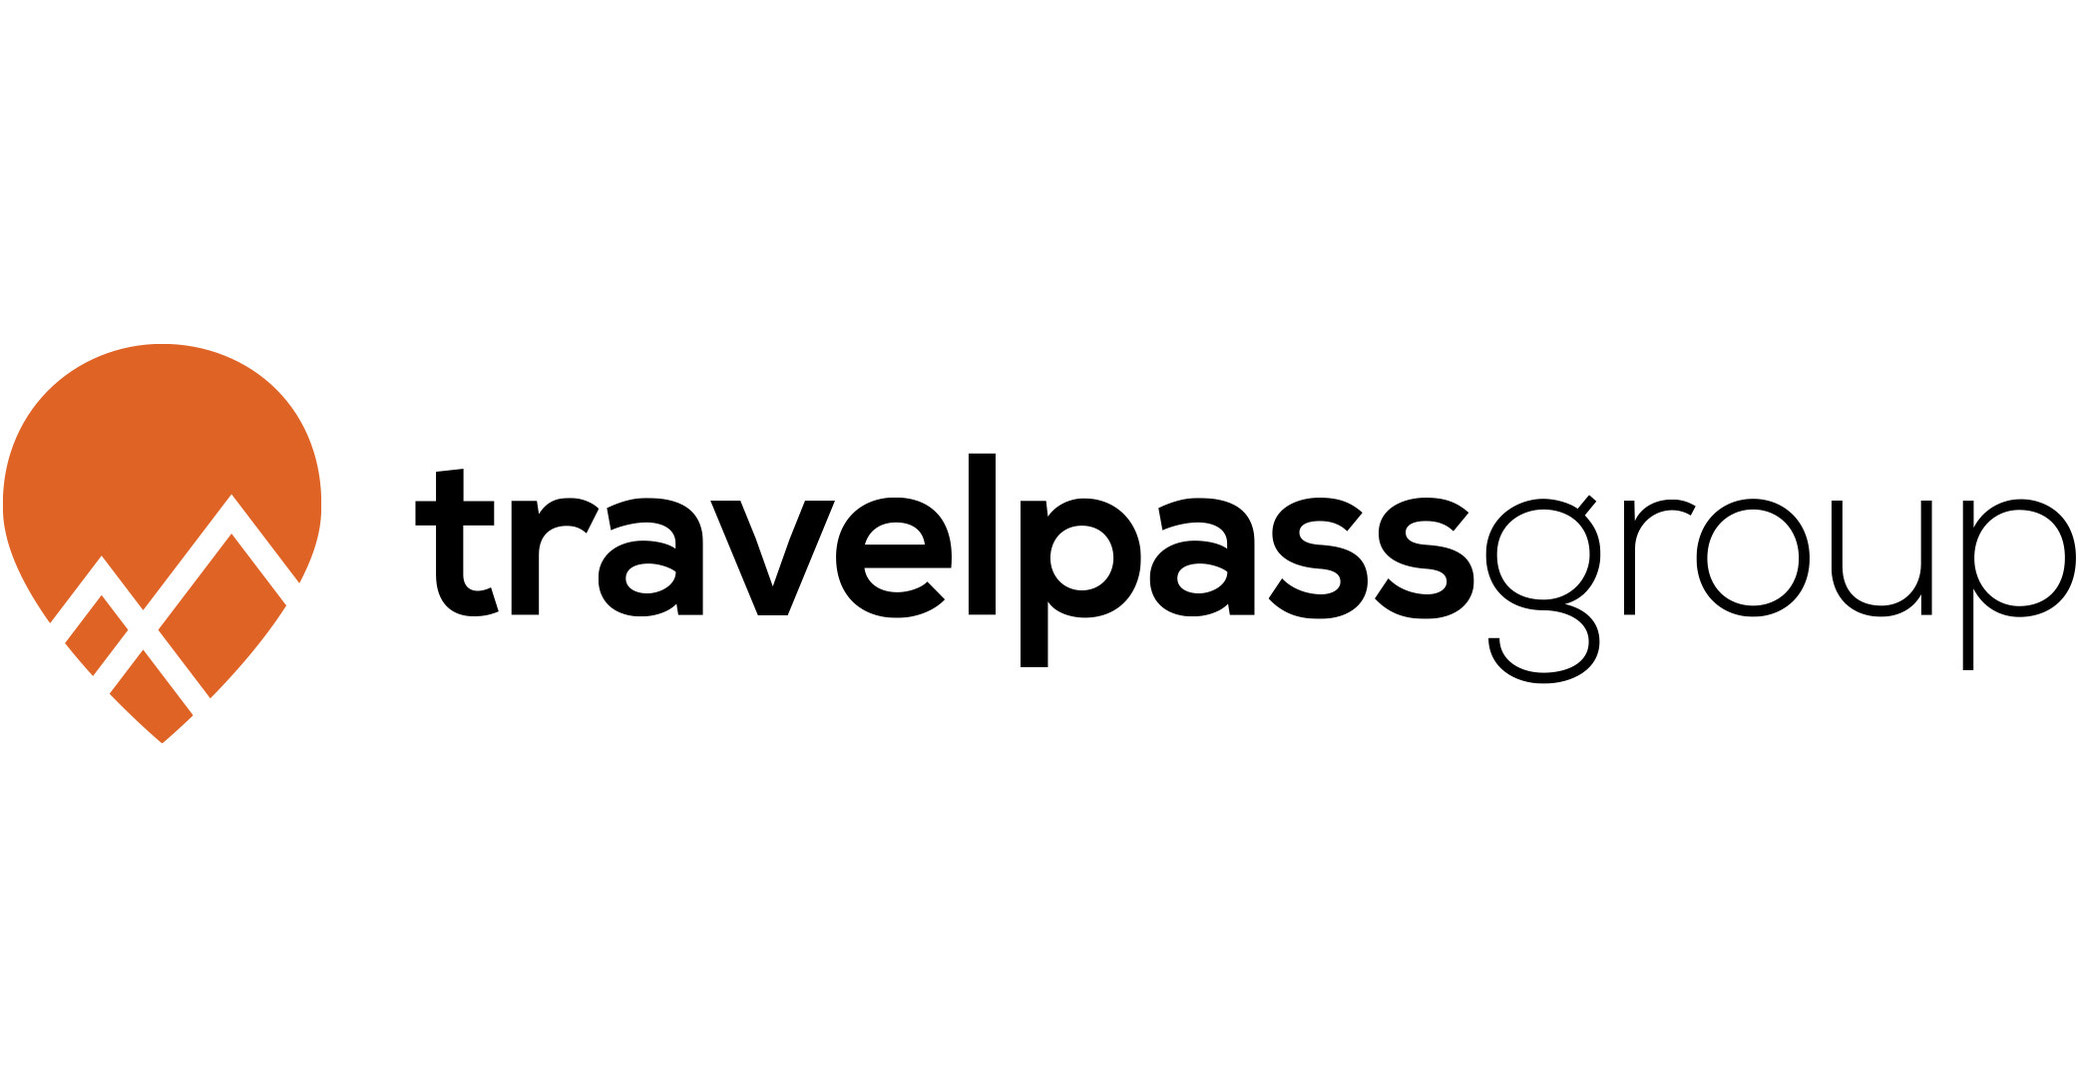 luxury travel pass